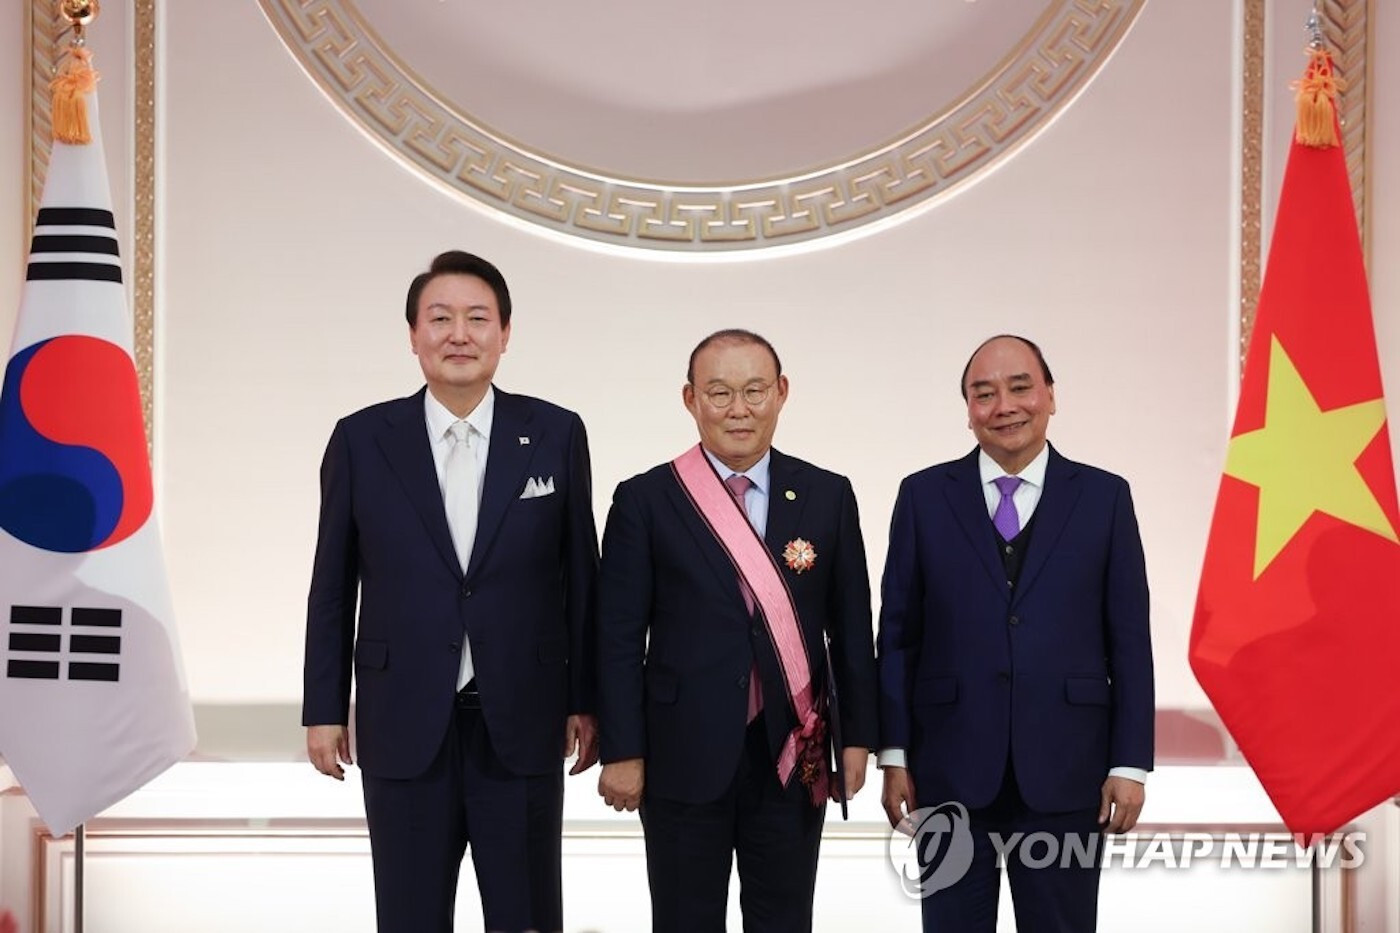 HLV Park Hang Seo nhận huân chương Heungin vì sự nghiệp ngoại giao Hàn Quốc - 1